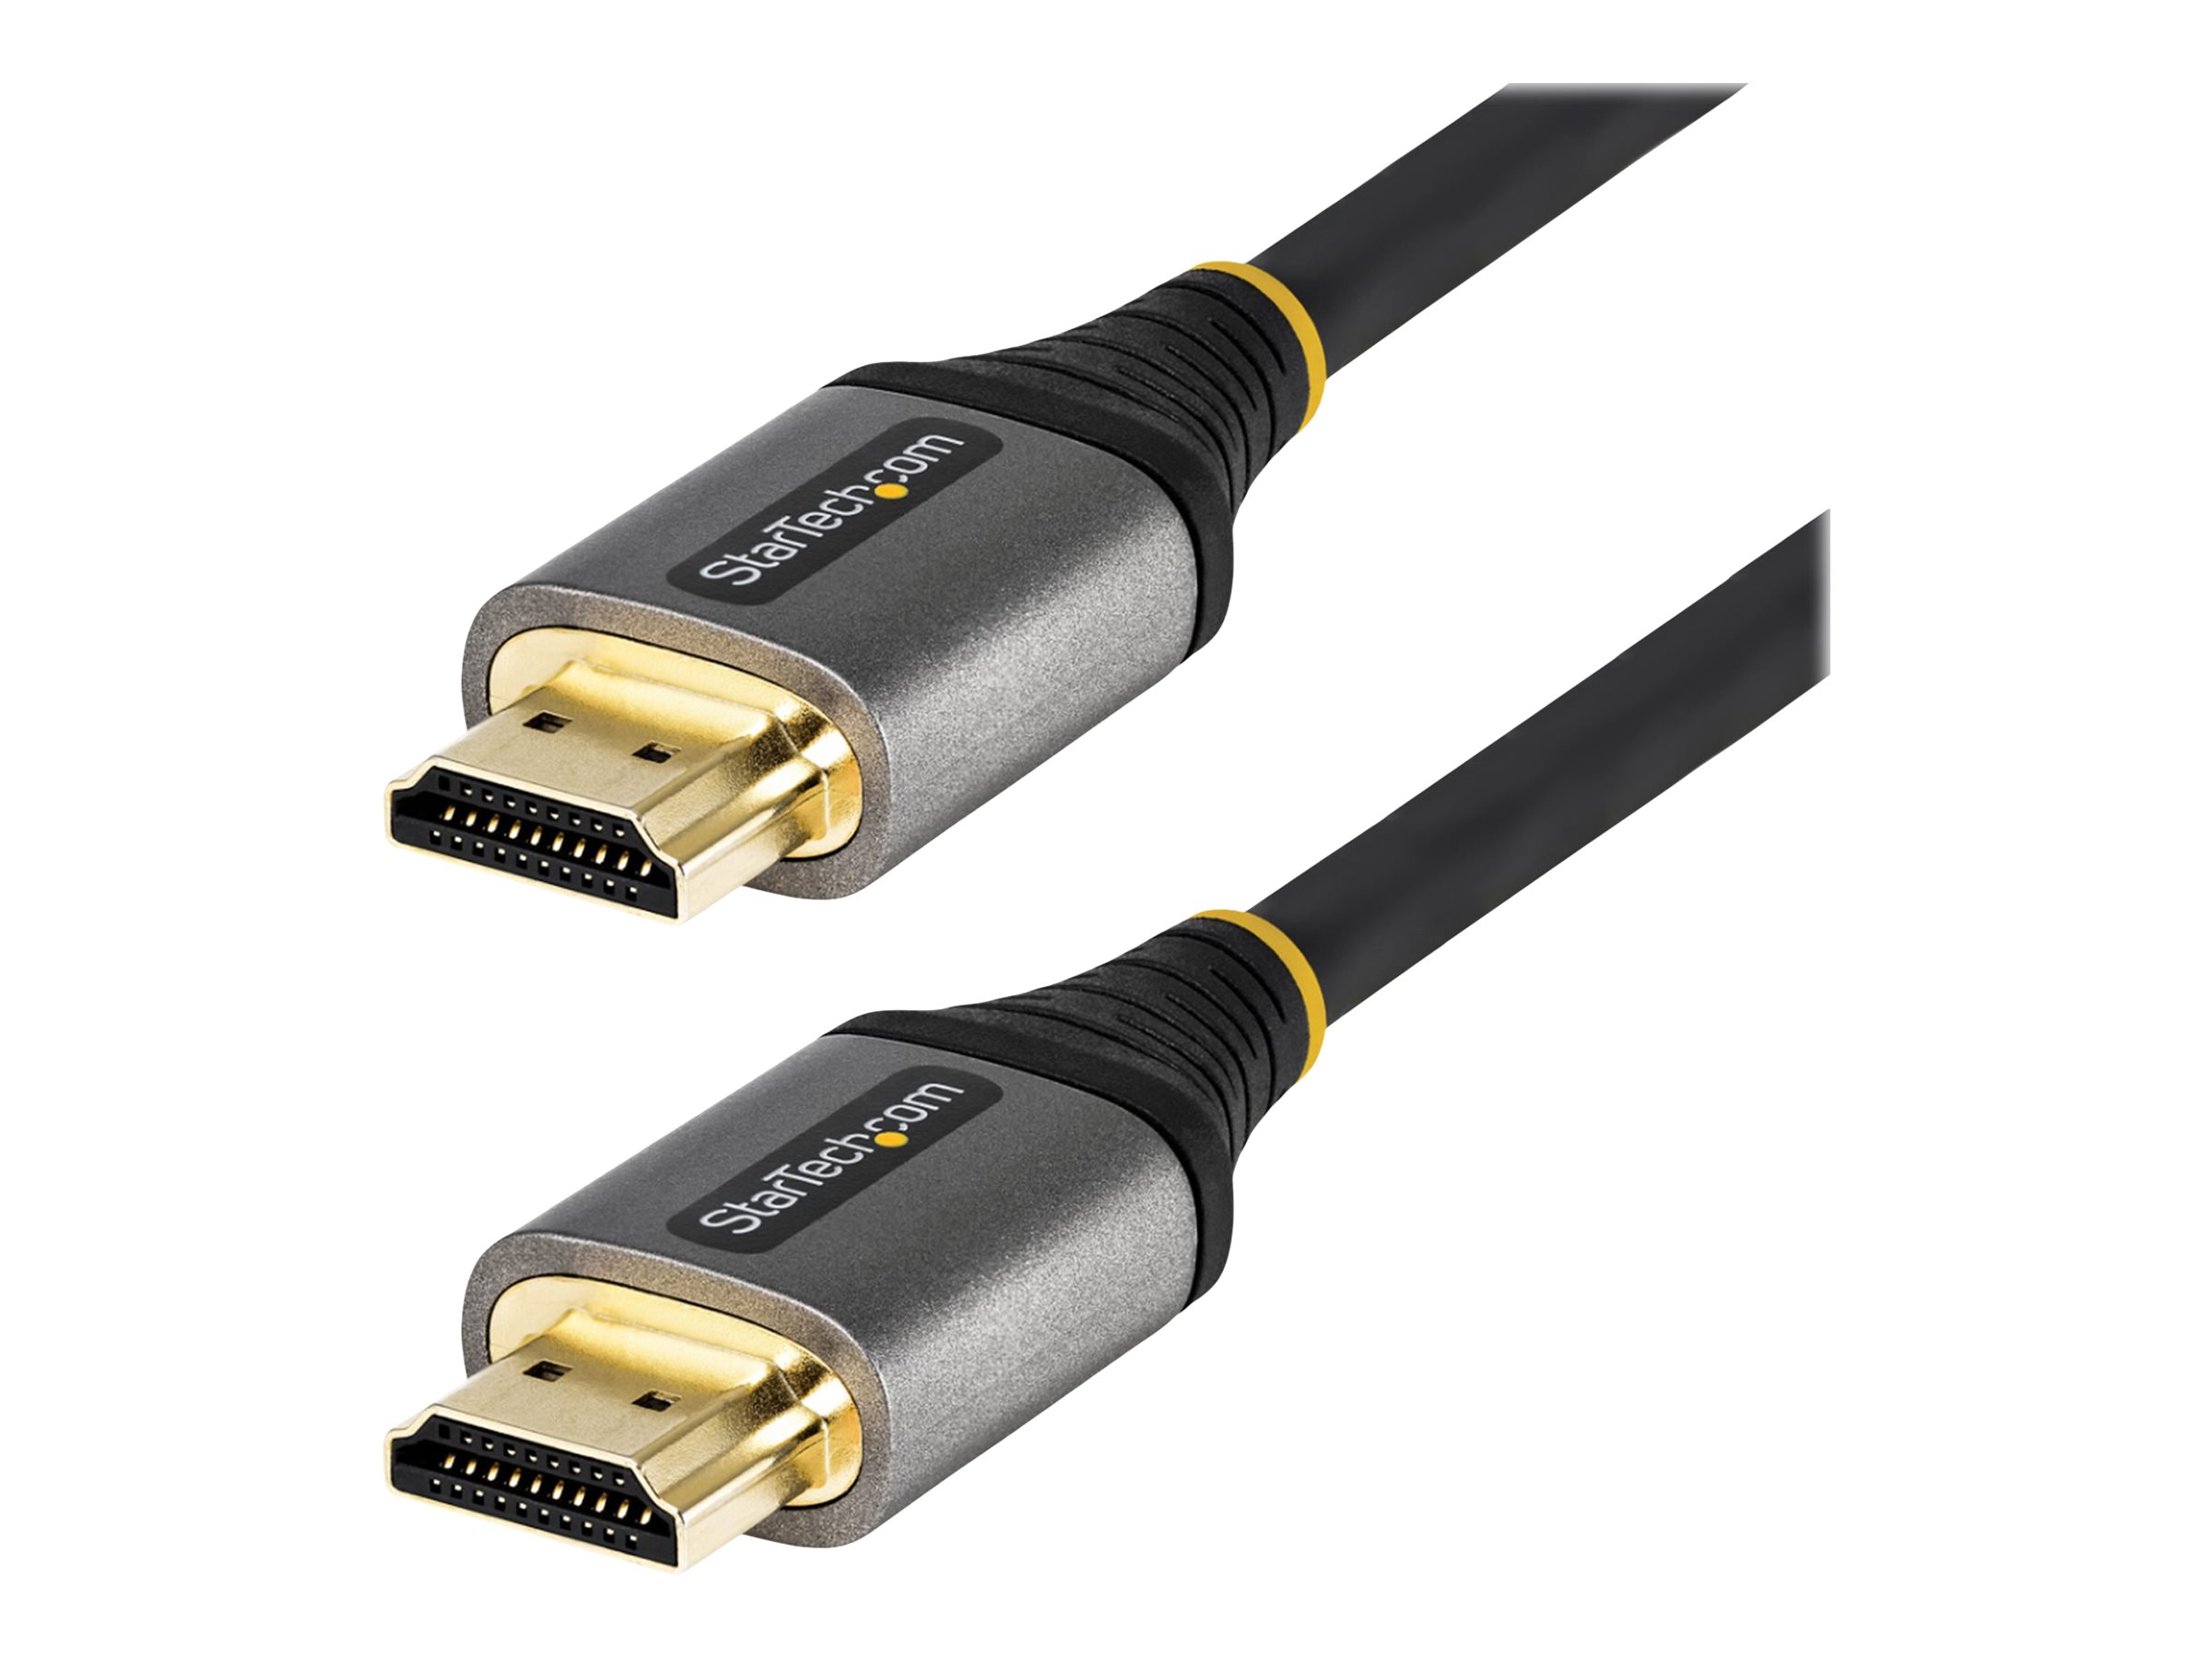 StarTech.com 3m Premium zertifiziertes HDMI 2.0 Kabel - High Speed Ultra HD 4K 60Hz HDMI Kabel mit Ethernet - HDR10, ARC - UHD HDMI Videokabel - Für UHD Monitore, TVs, Displays - M/M (HDMMV3M) - HDMI-Kabel mit Ethernet - 3 m